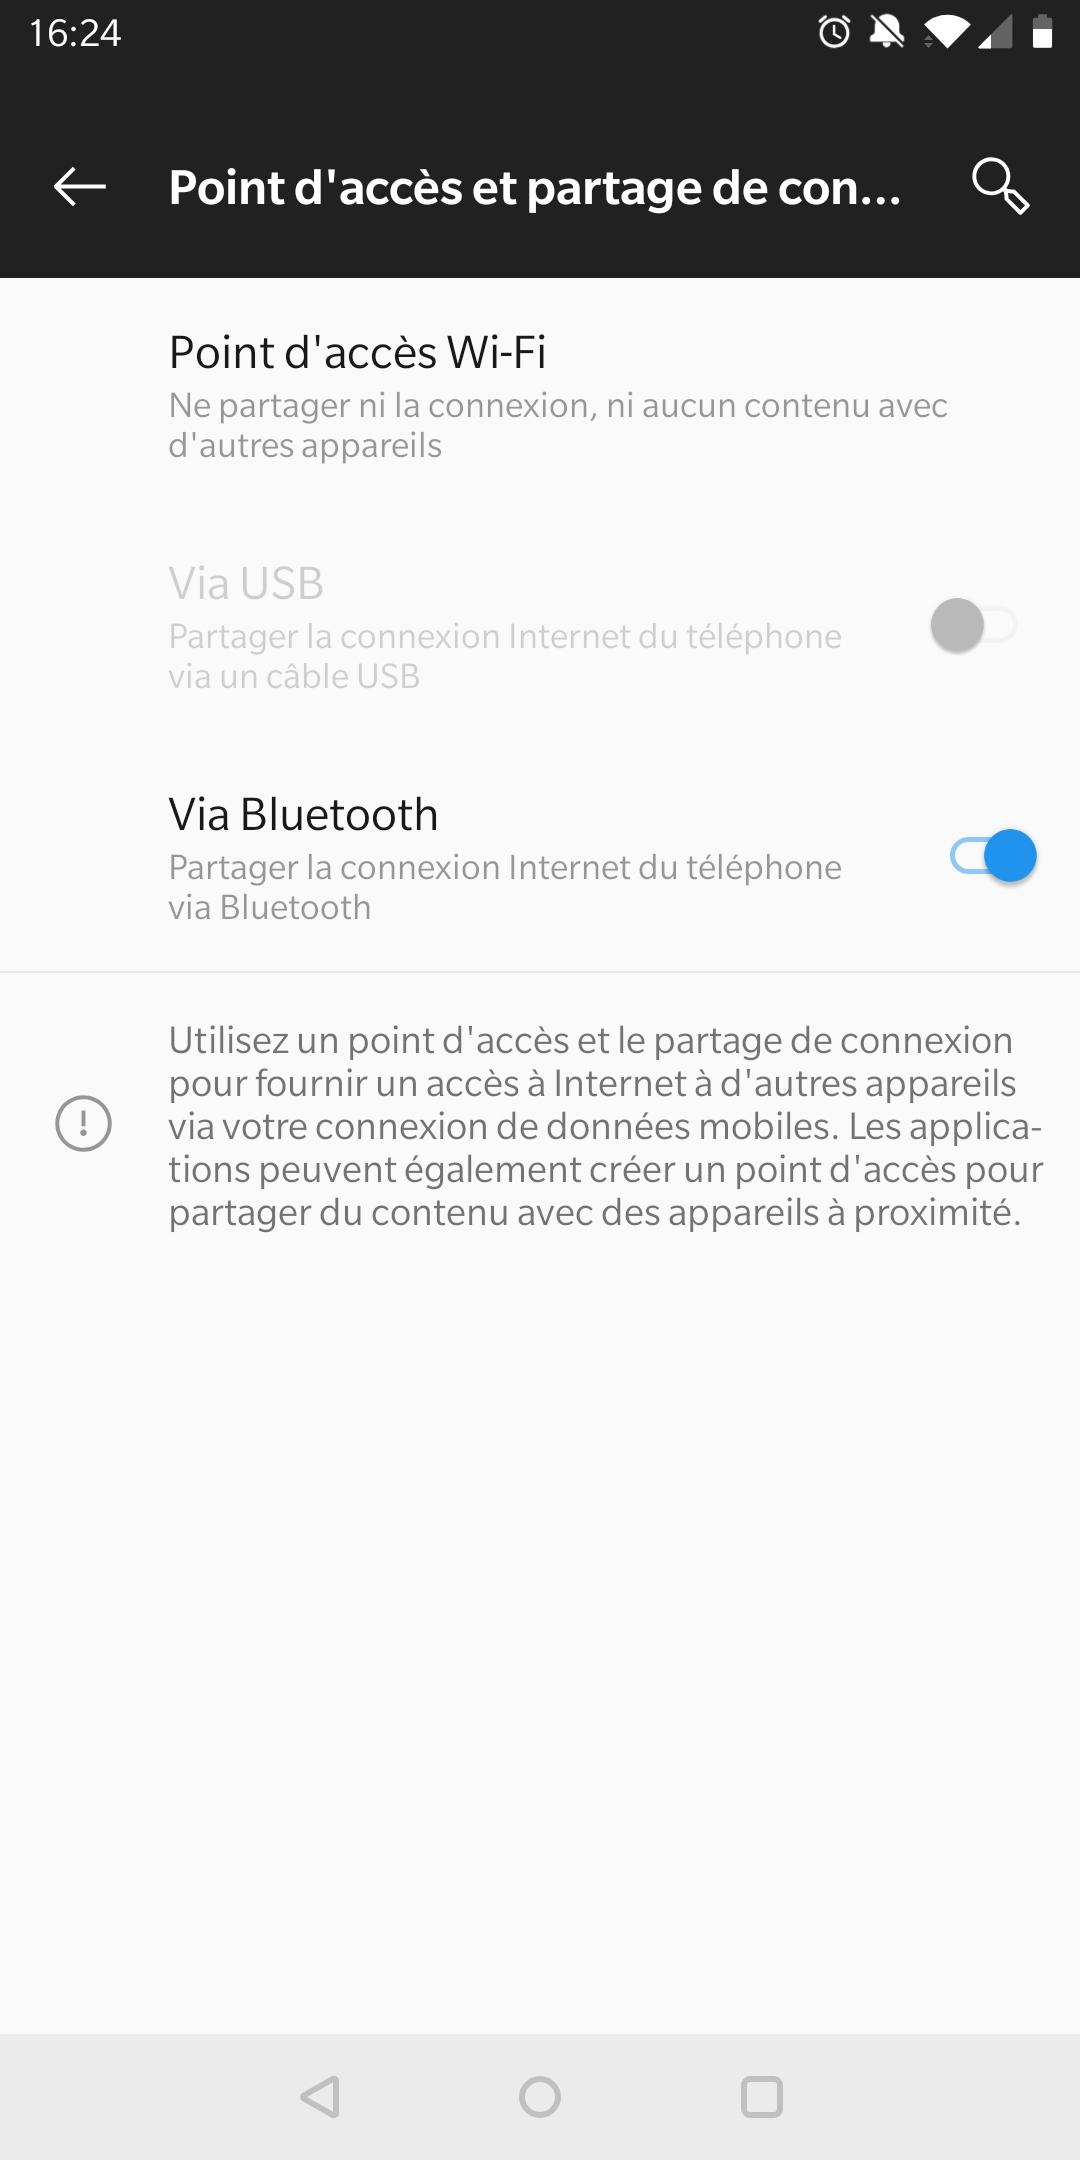 Partage connexion WiFi et accès à internet Box